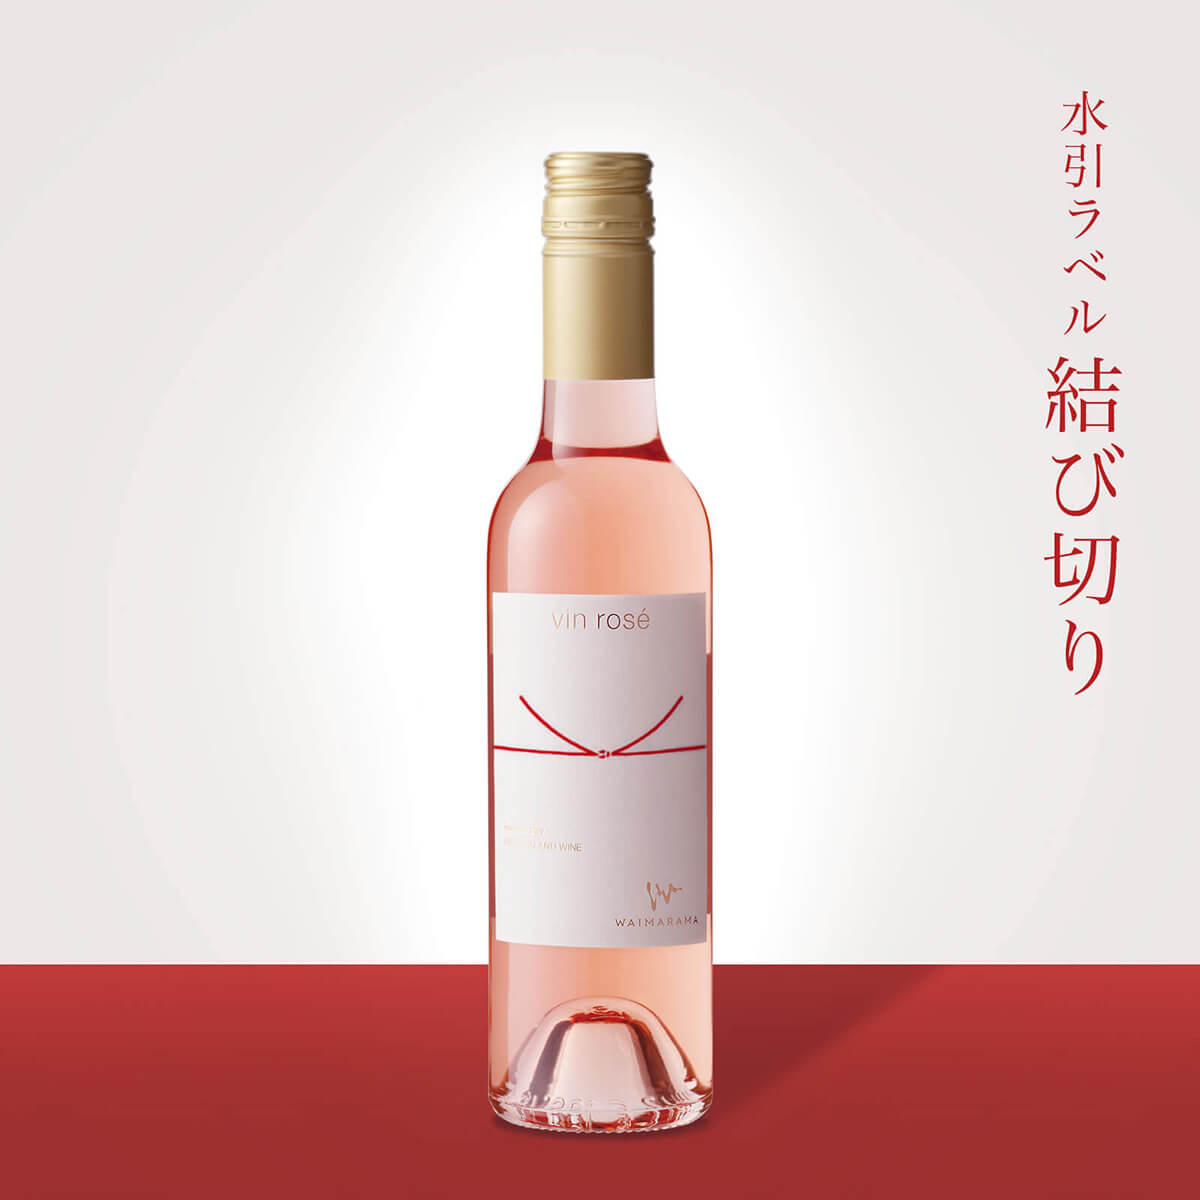 画像1: vin rose 2018 ハーフ375ml【結び切り】 (1)